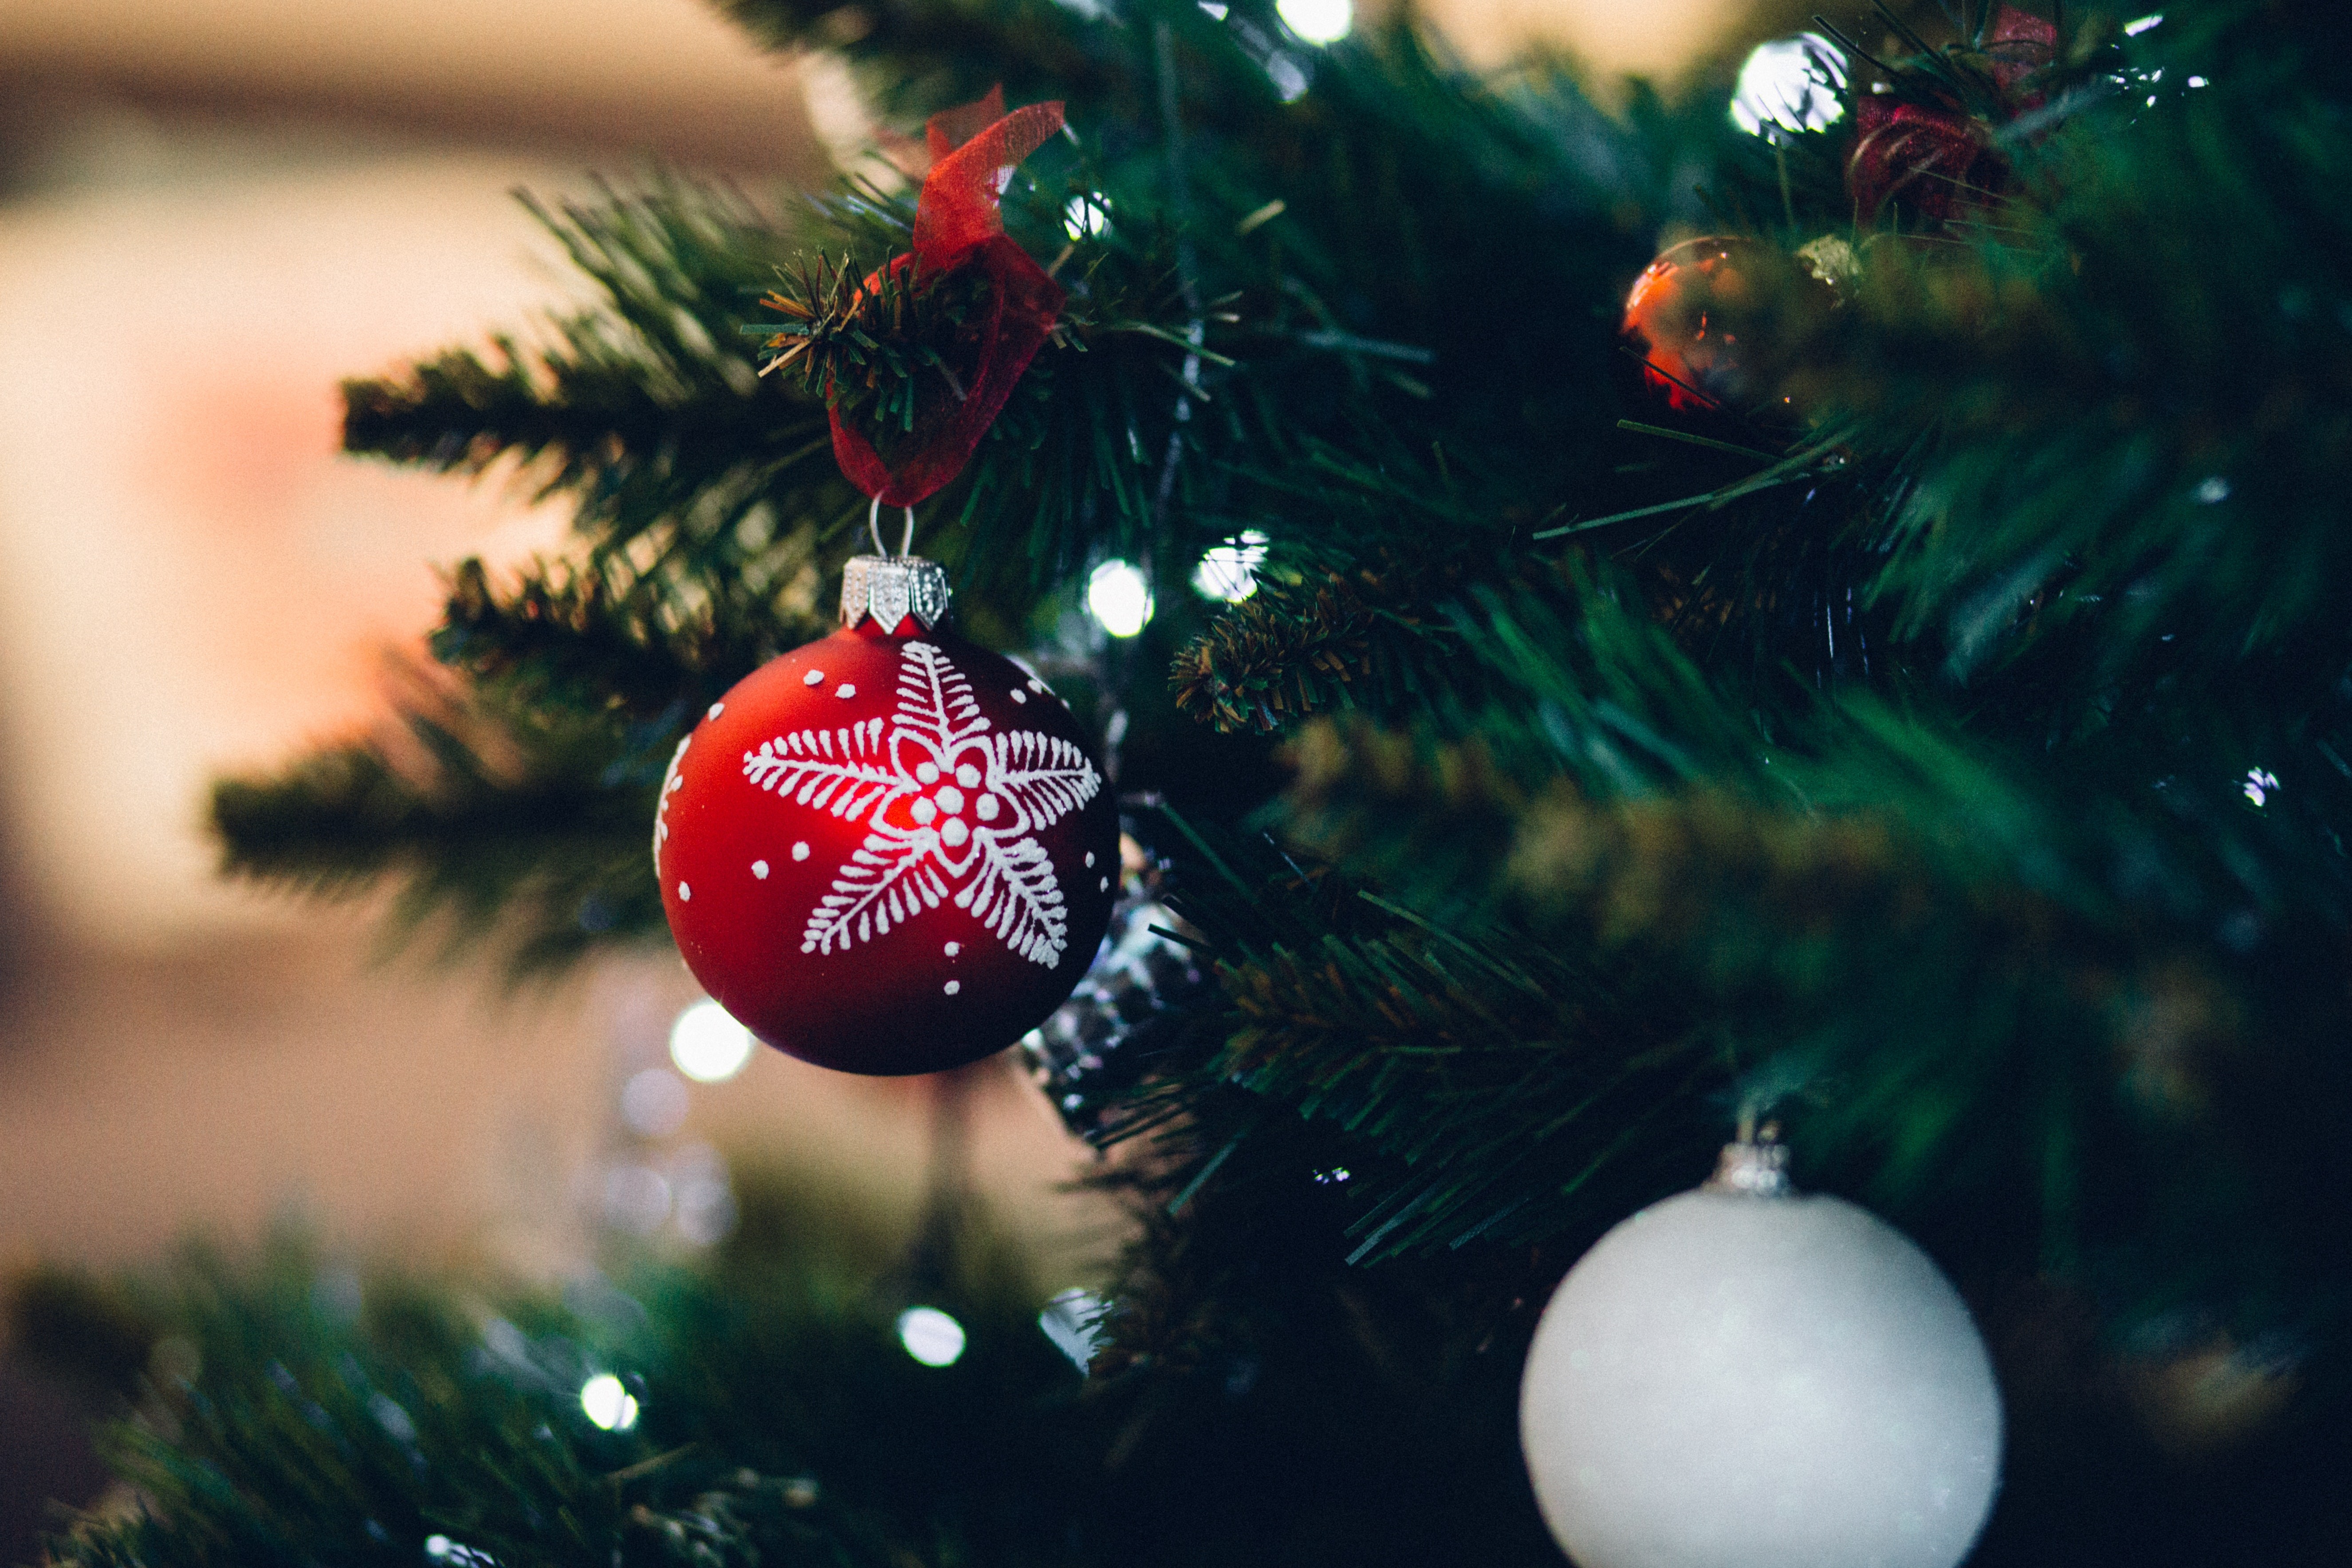 É importante estar atento ao equilíbrio no décor para que os itens natalinos ornem com o resto da casa (Foto: Pexels / freestocks.org / CreativeCommons)